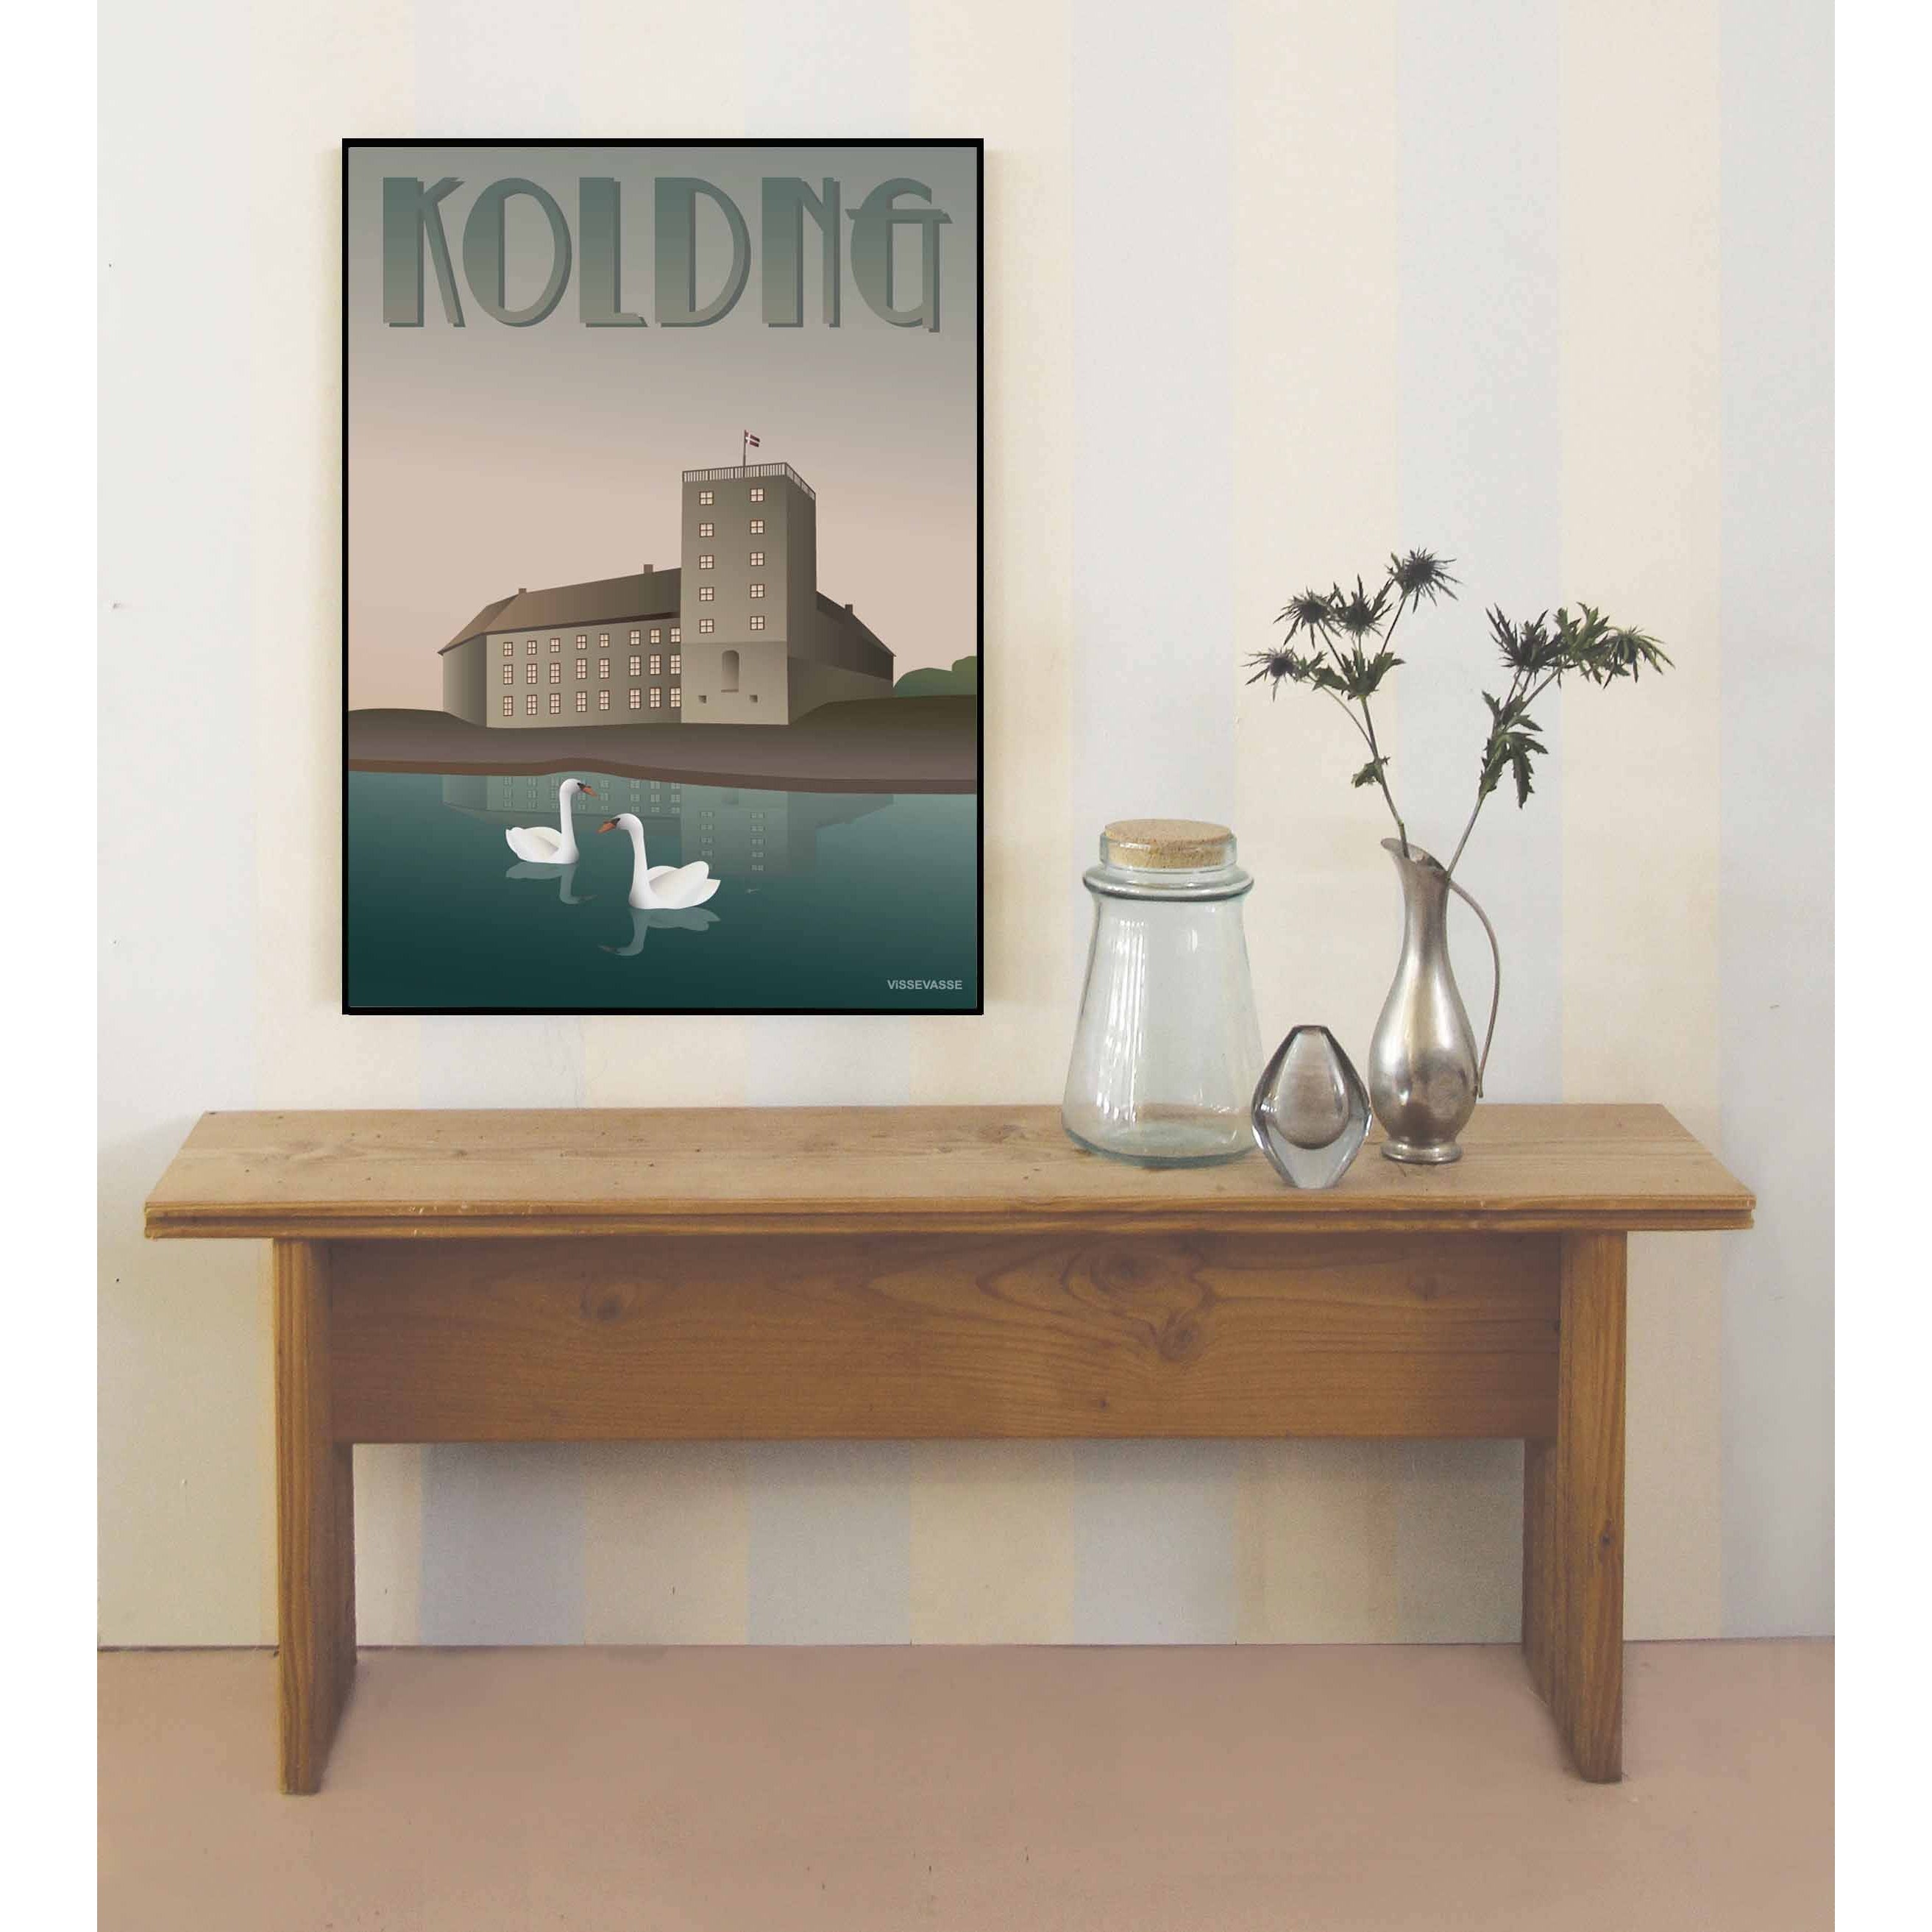 Affiche Vissevasse Kolding Koldinghaus, 15 x 21 cm